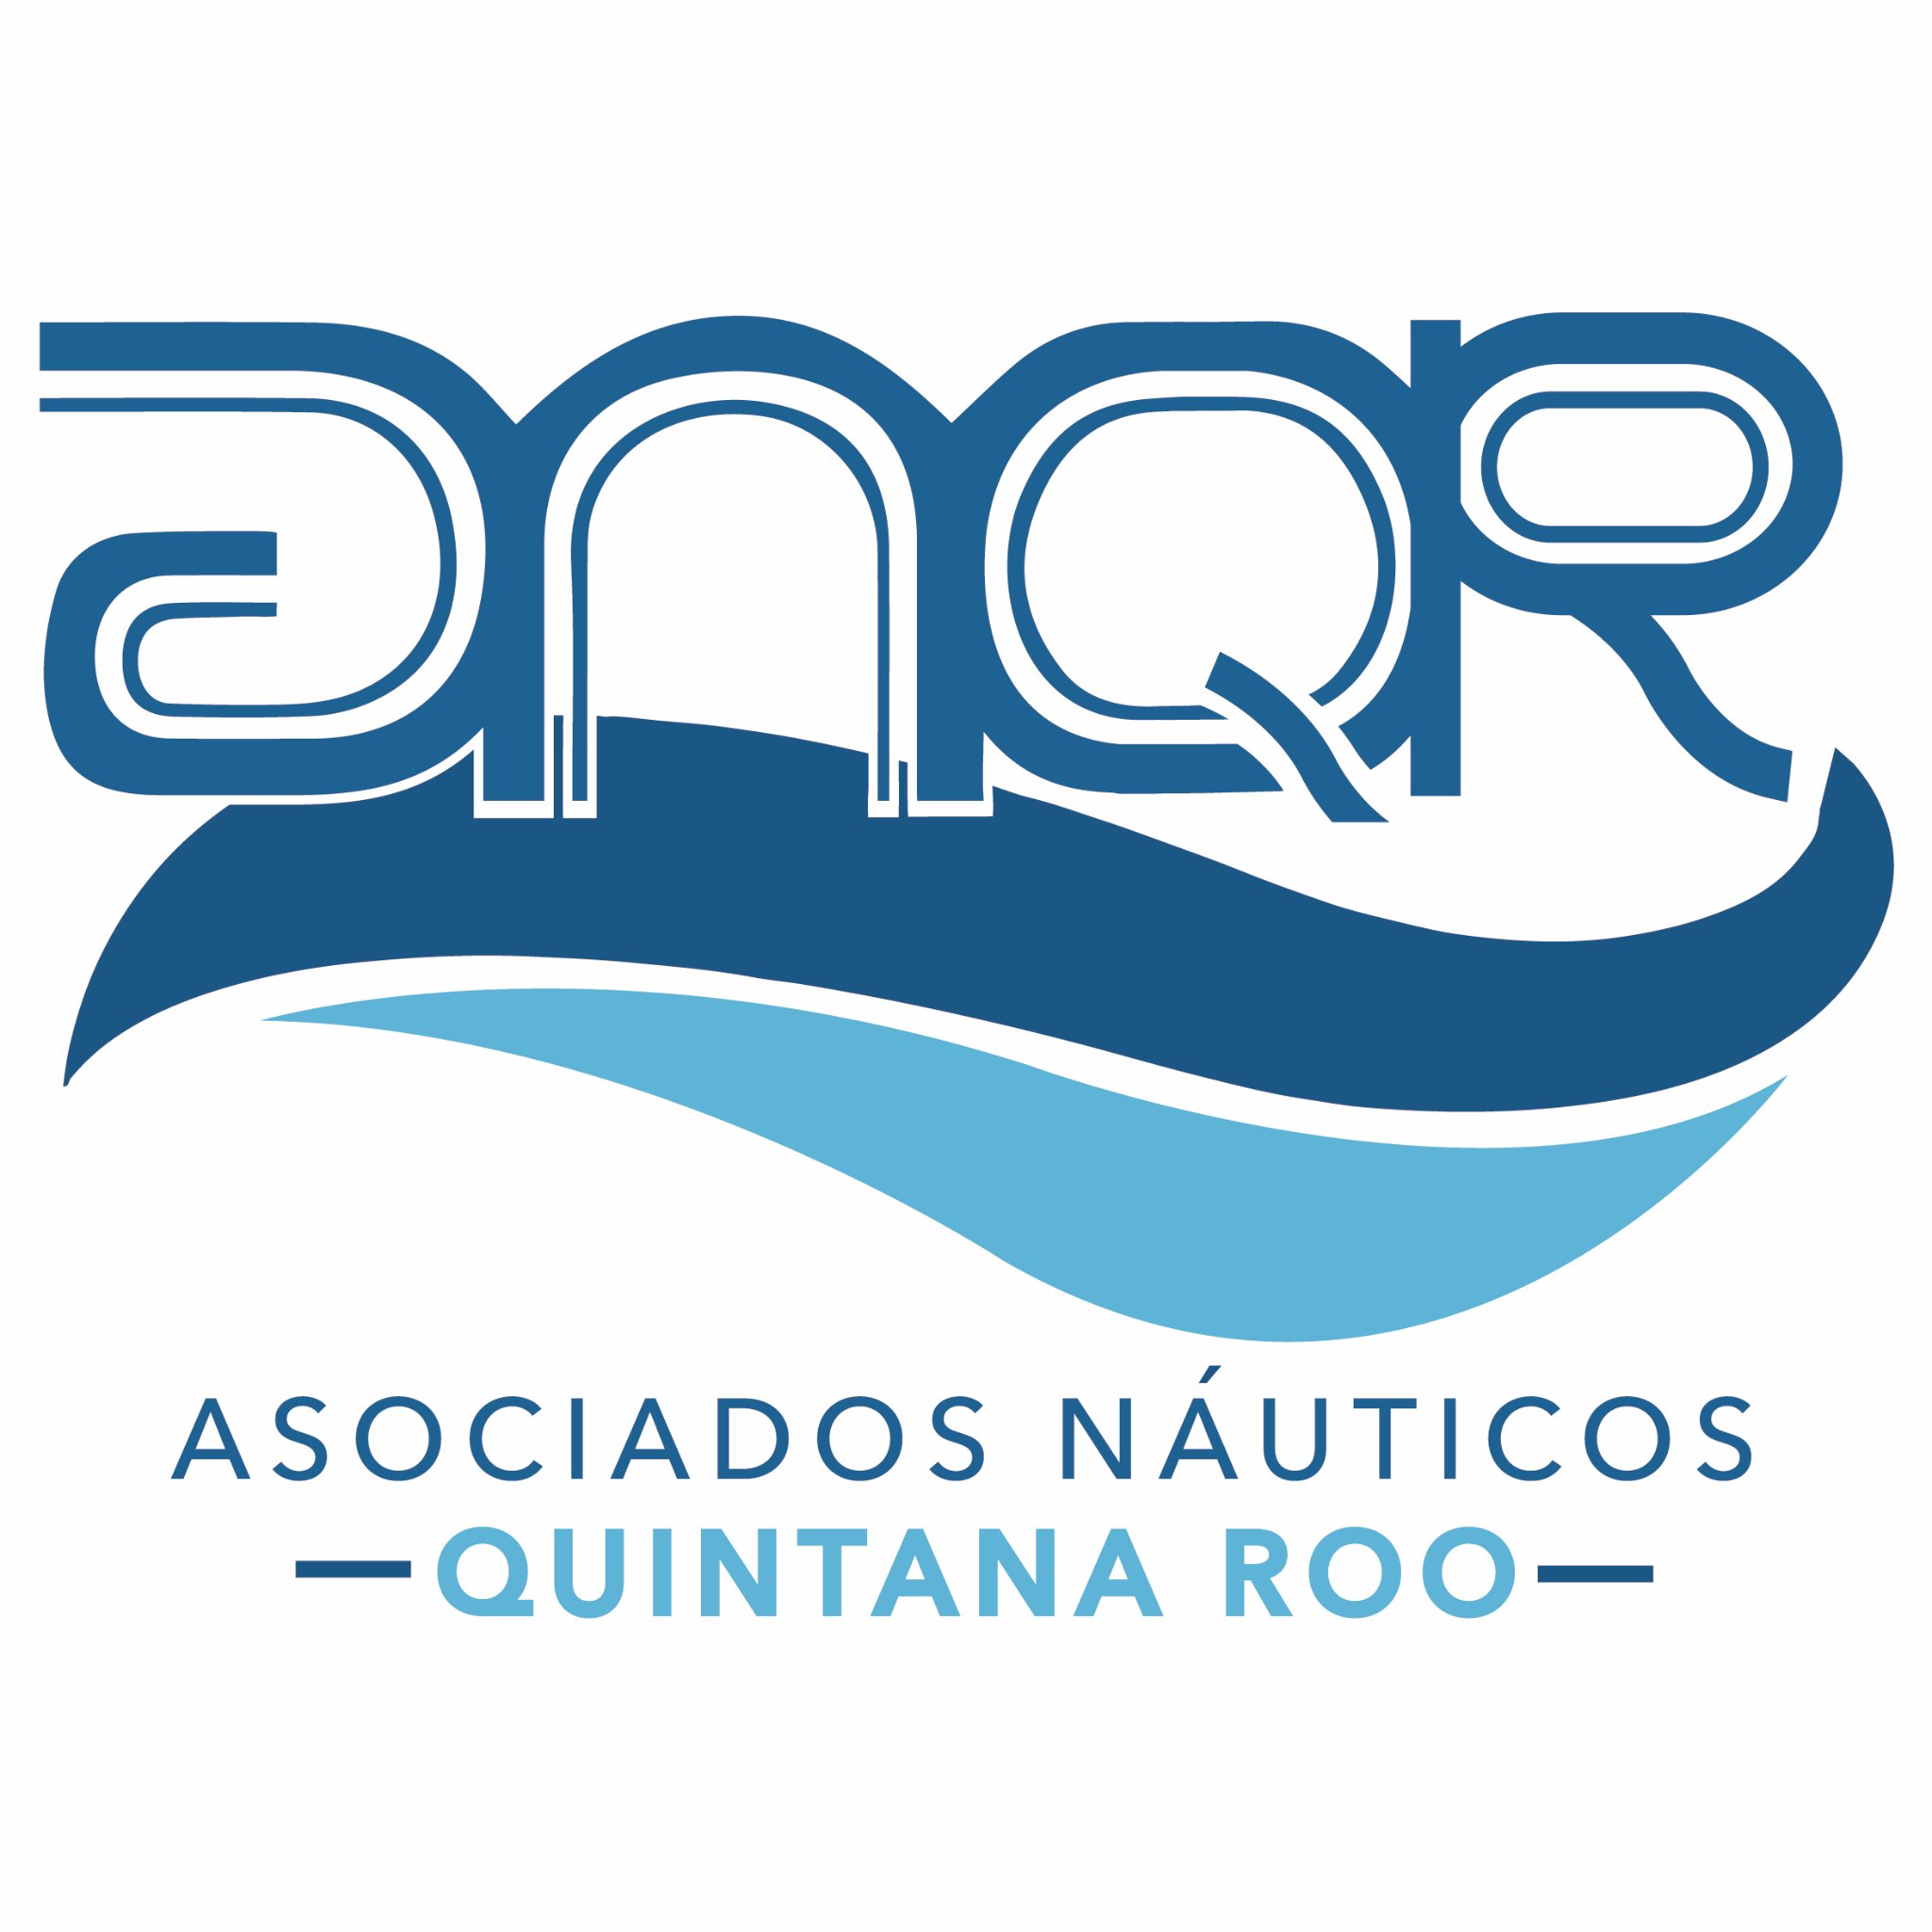 Asociados Náuticos Quintana Roo